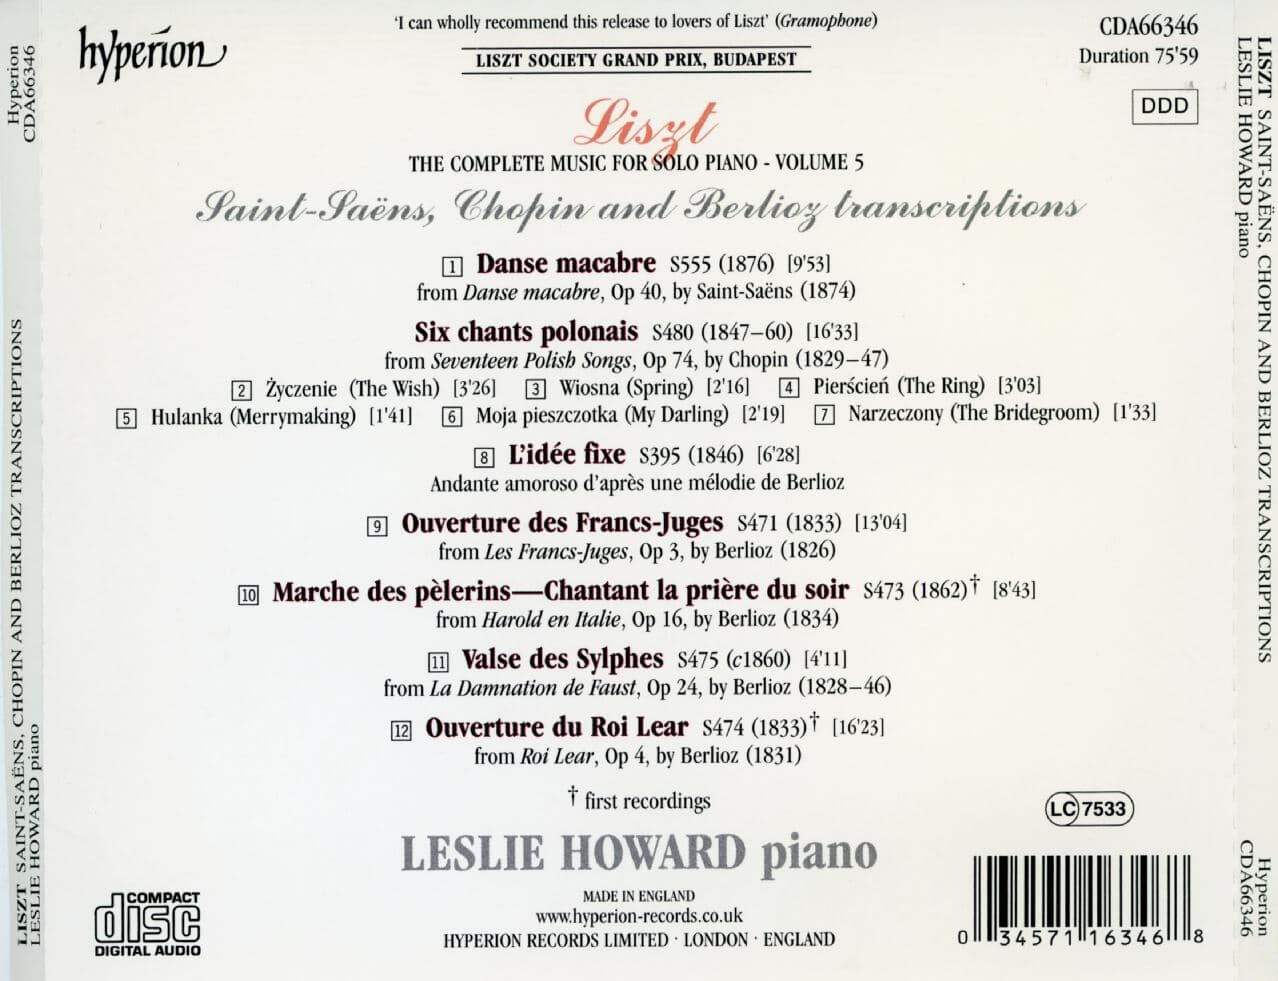 레슬리 하워드 - Leslie Howard - Liszt Transcriptions [U.K발매]